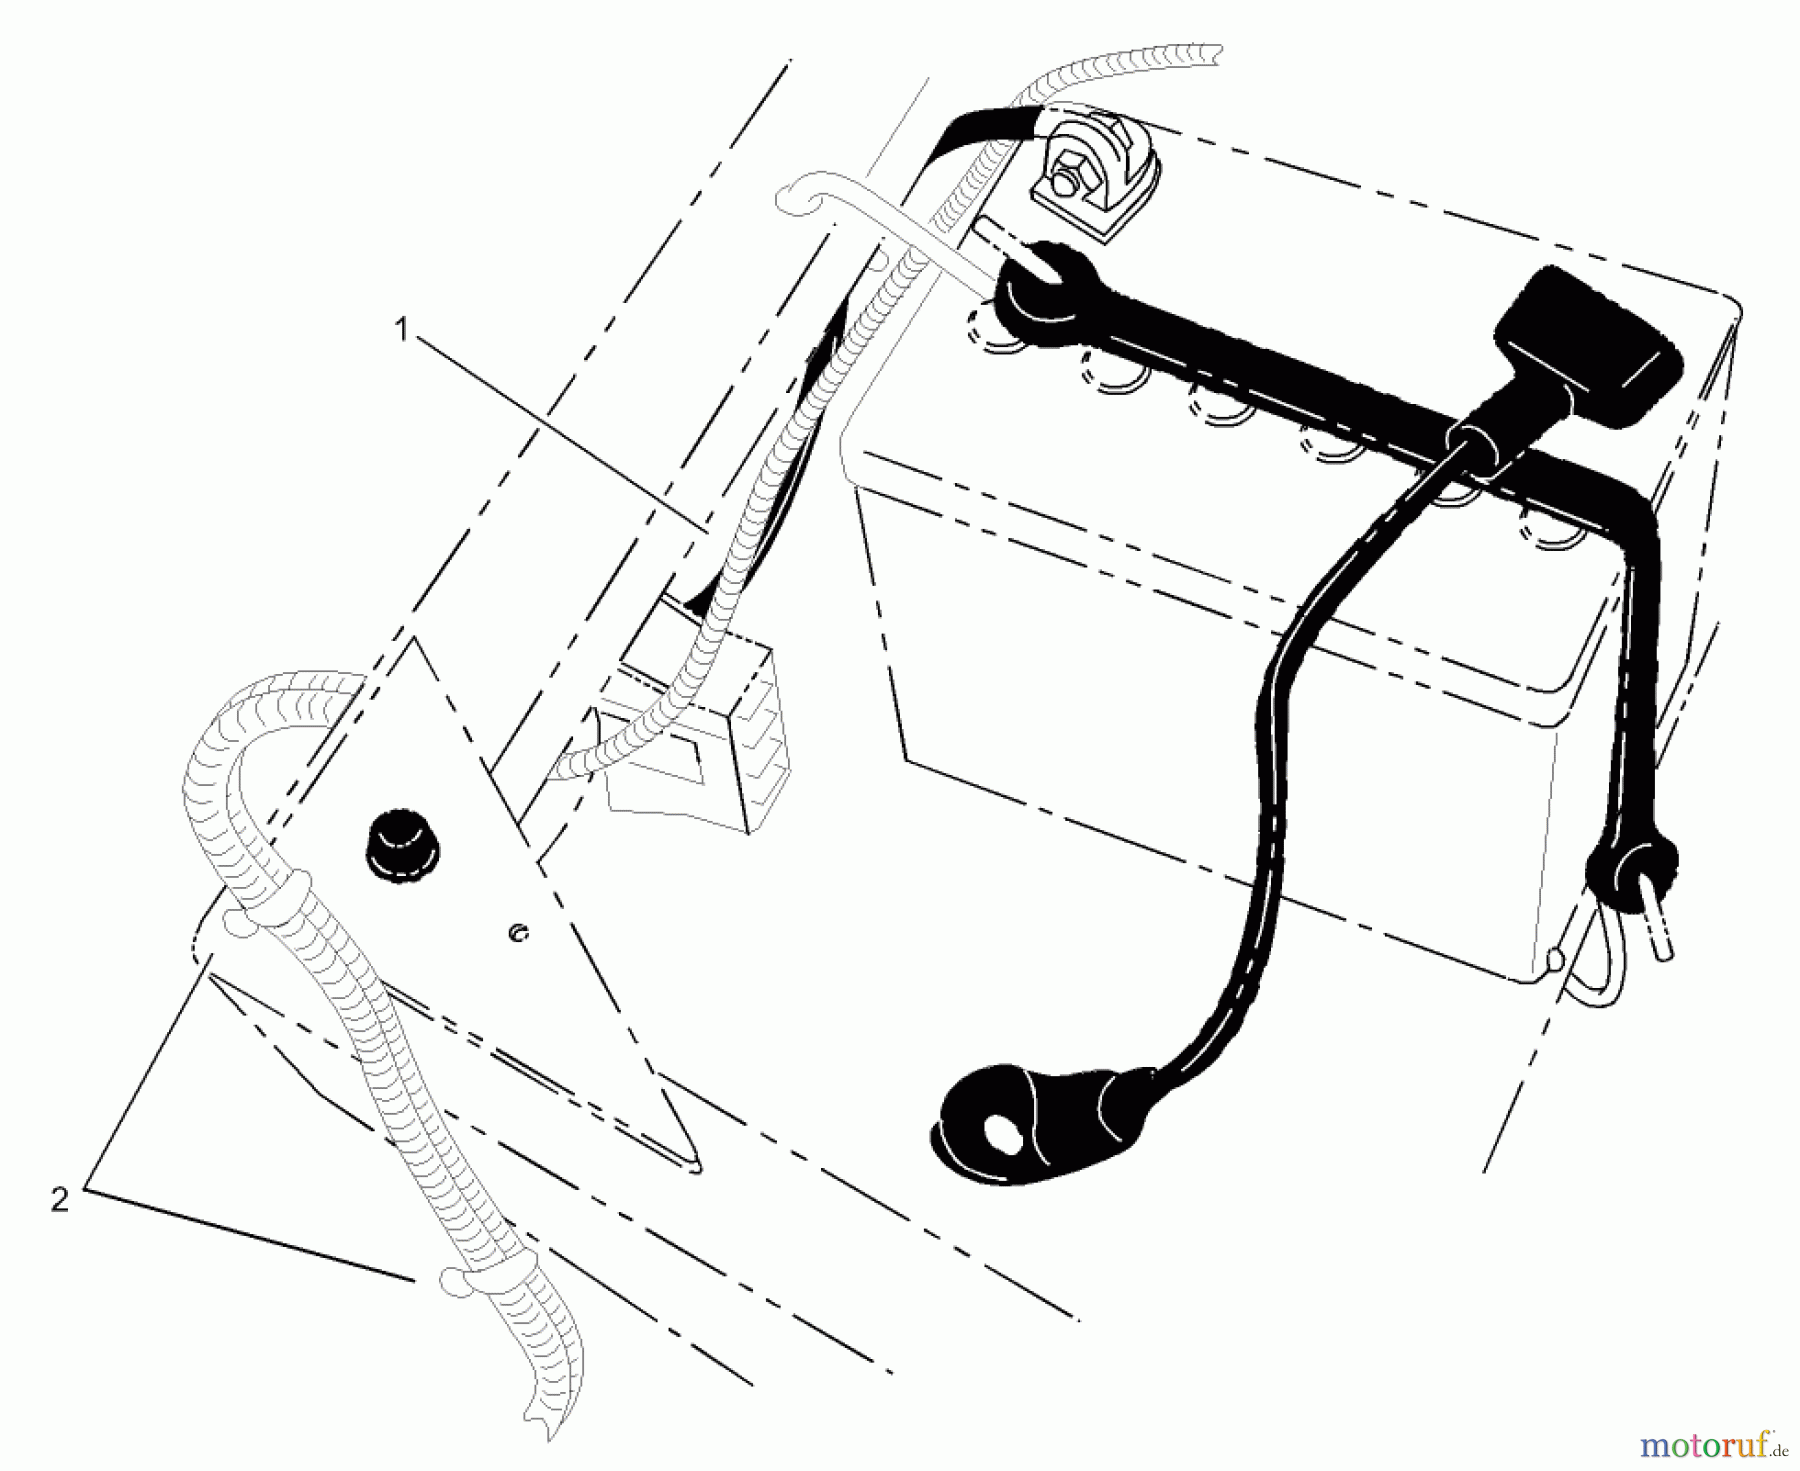  Toro Neu Accessories, Mower 107-9130 - Toro Light Kit, Zero-Turn-Radius Riding Mower LAMP HARNESS ASSEMBLY